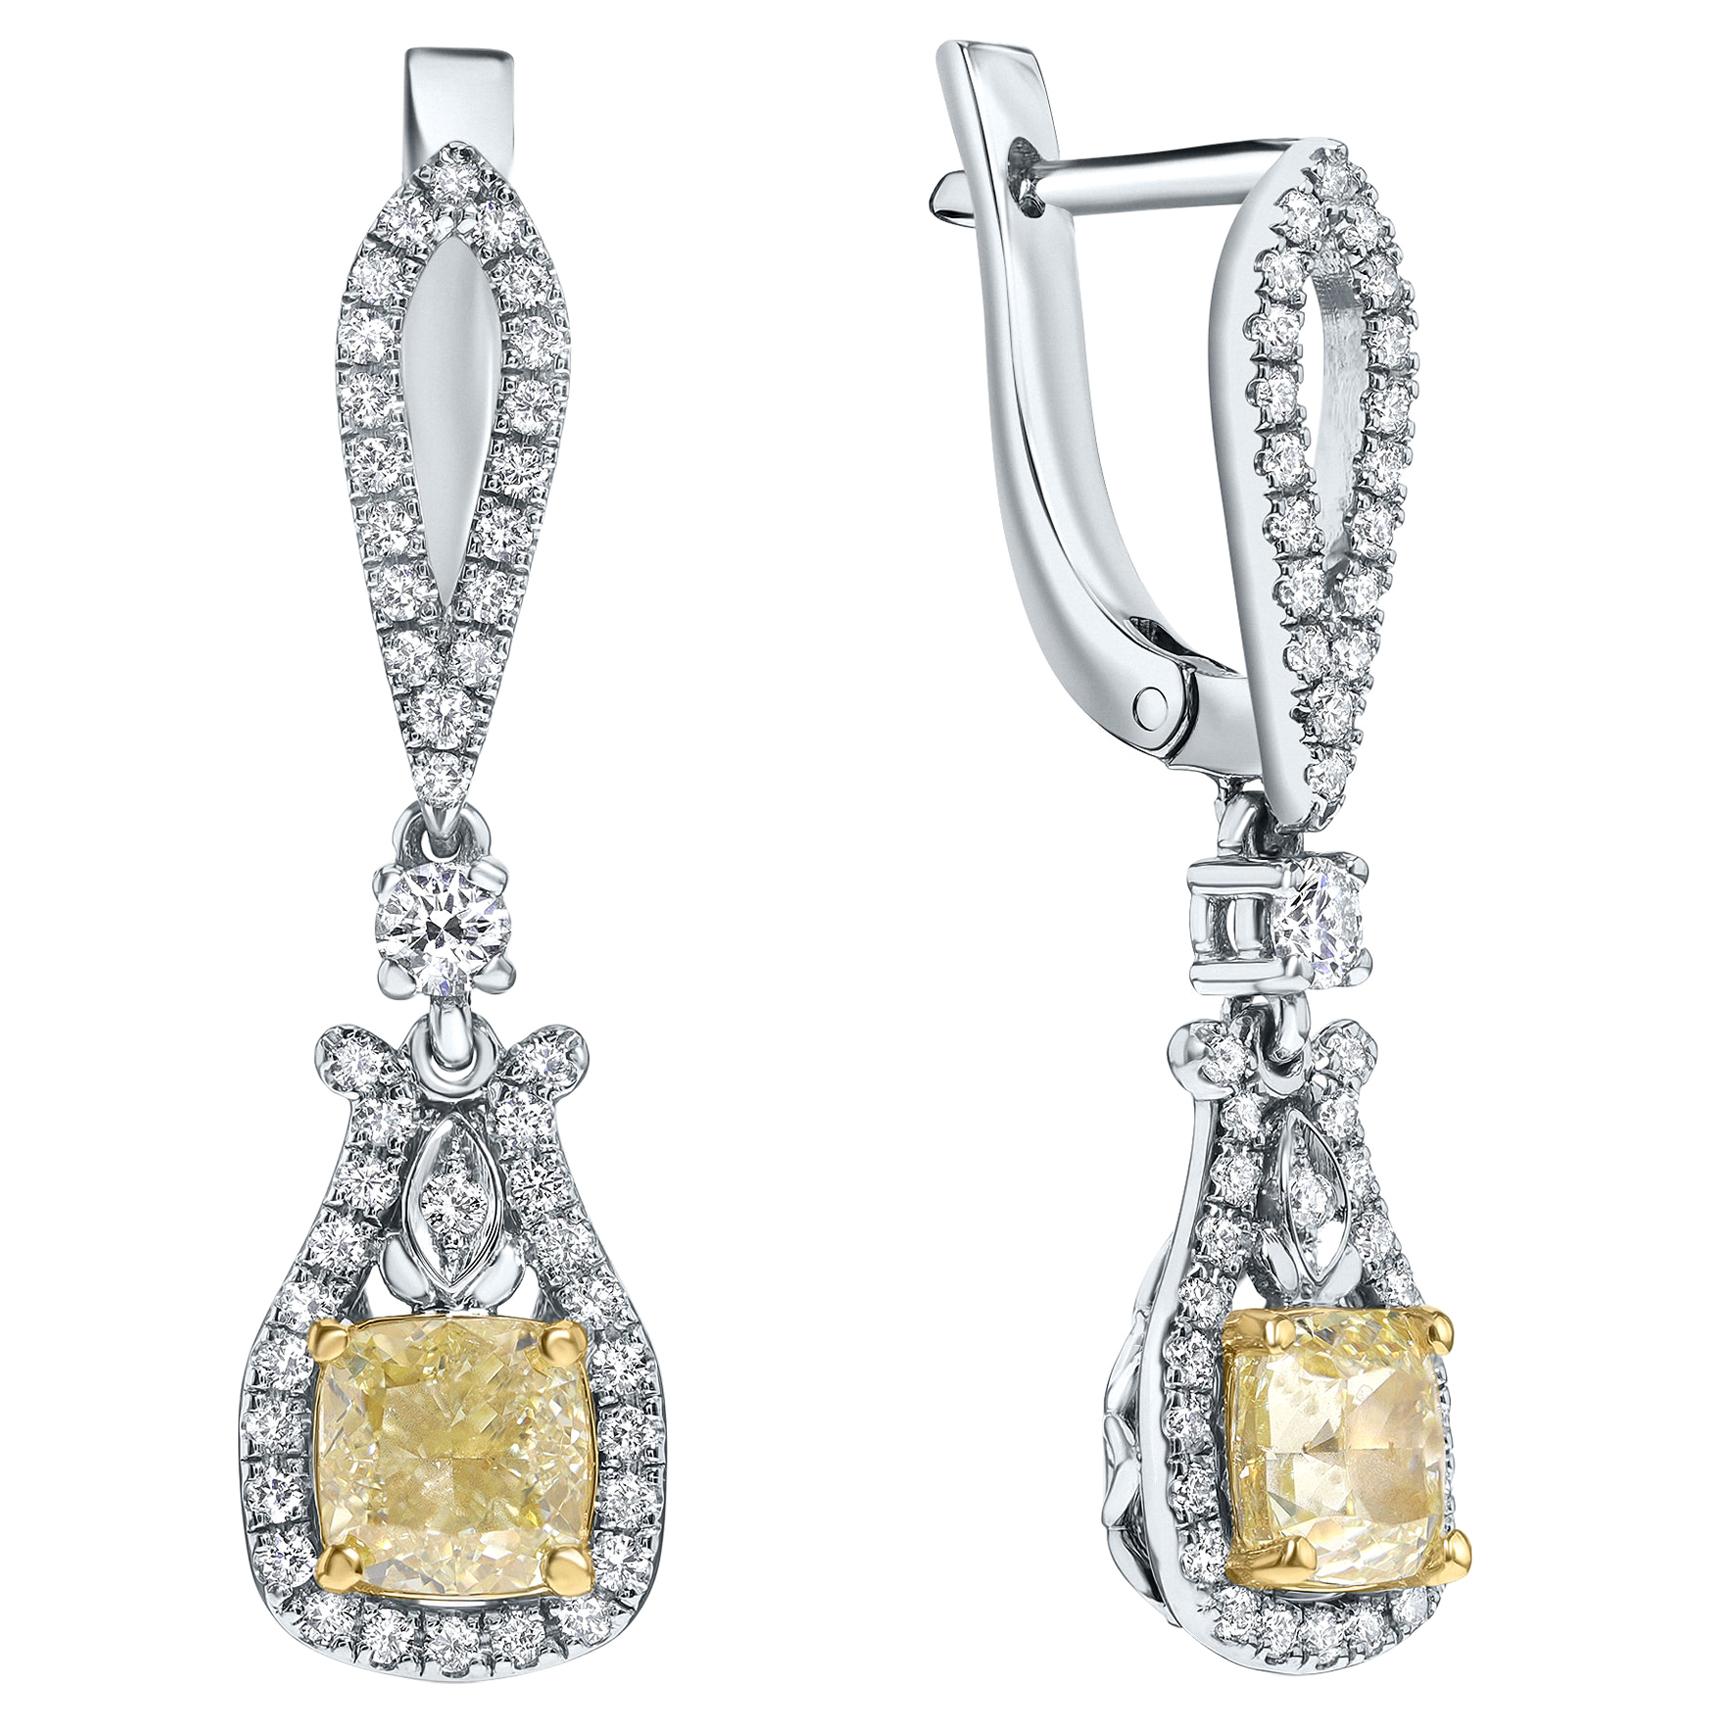 Boucles d'oreilles en or blanc avec diamants jaunes et blancs de fantaisie naturels de 2,57 carats certifiés IGI